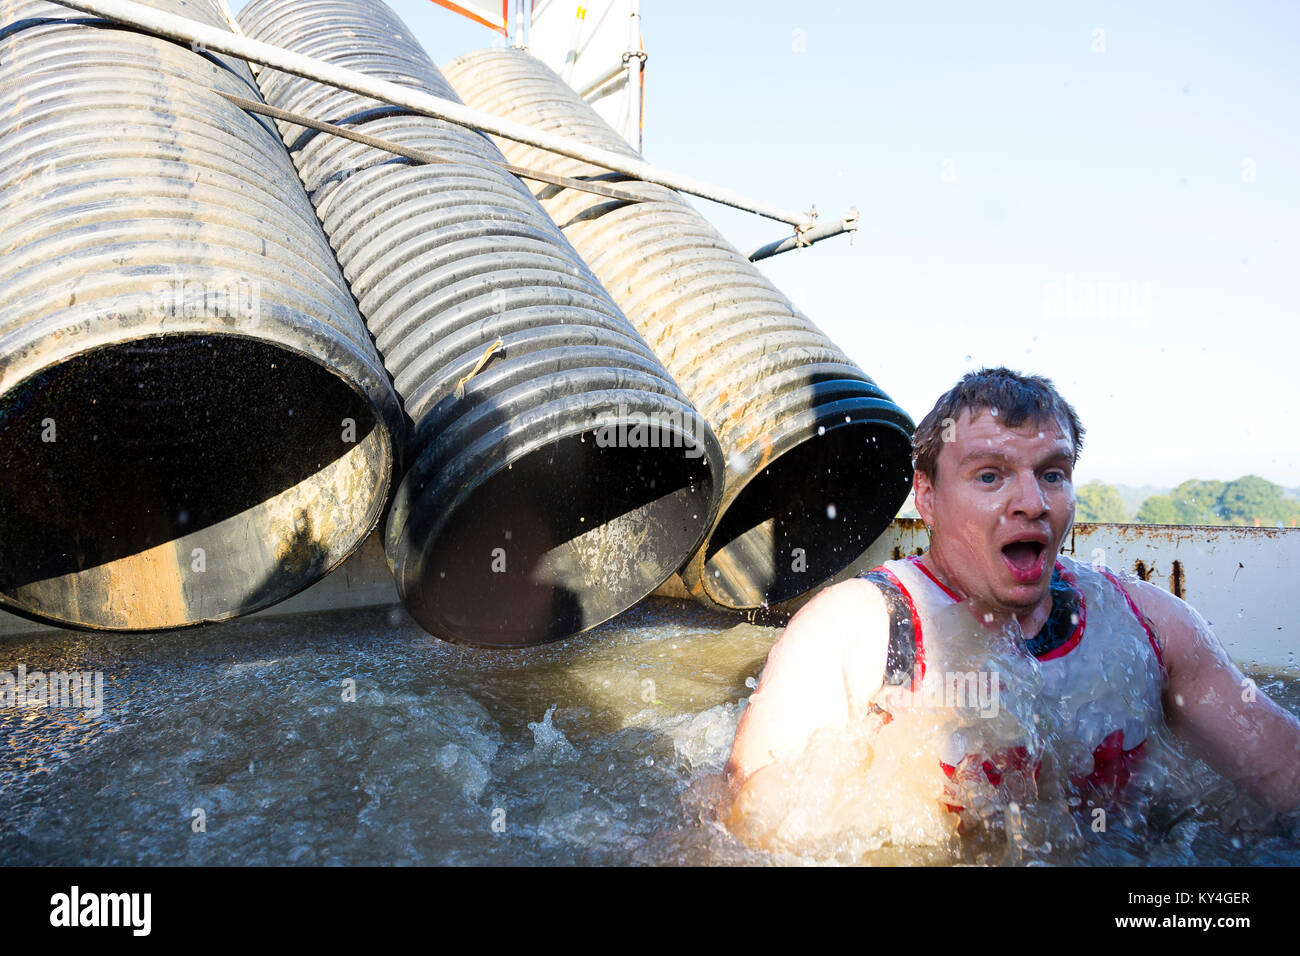 Sussex, UK. Un jeune homme tire un visage choqué alors qu'il émerge d'un bassin d'eau glacée pendant une dure Mudder course à obstacles. Banque D'Images